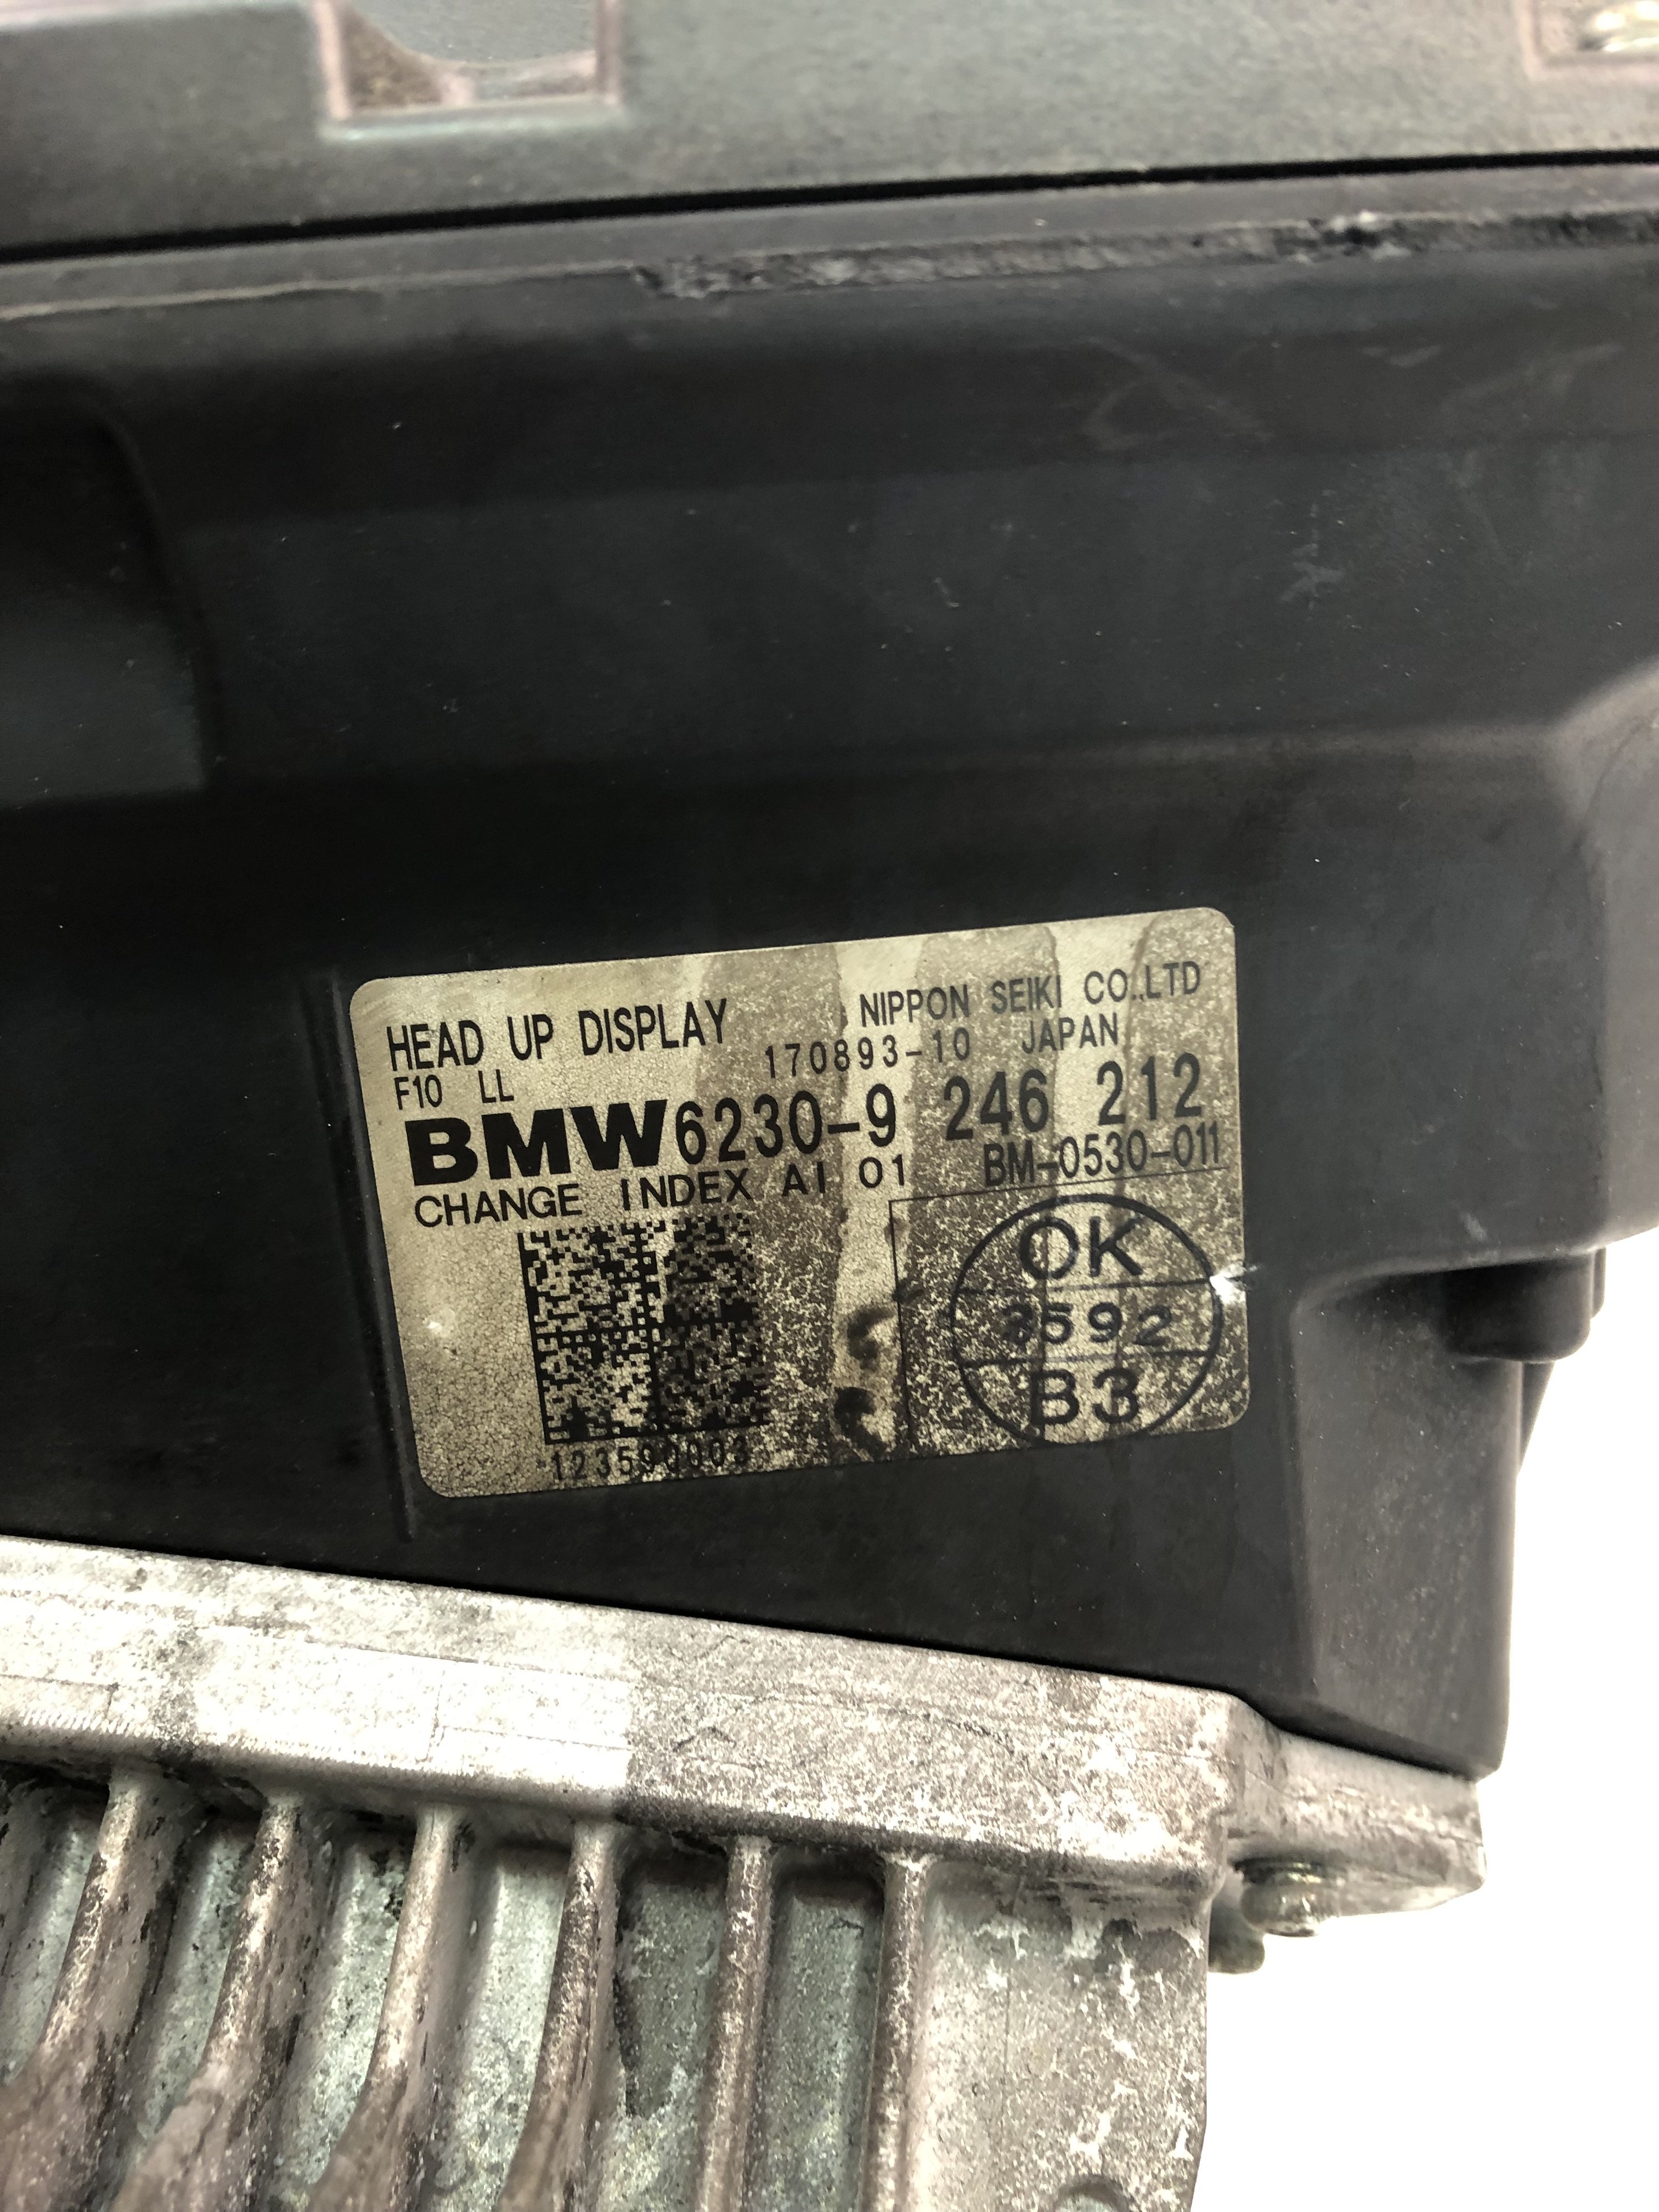 BMW 5 Series F10/F11 (2009-2017) Navigation Display 9246212 23497879